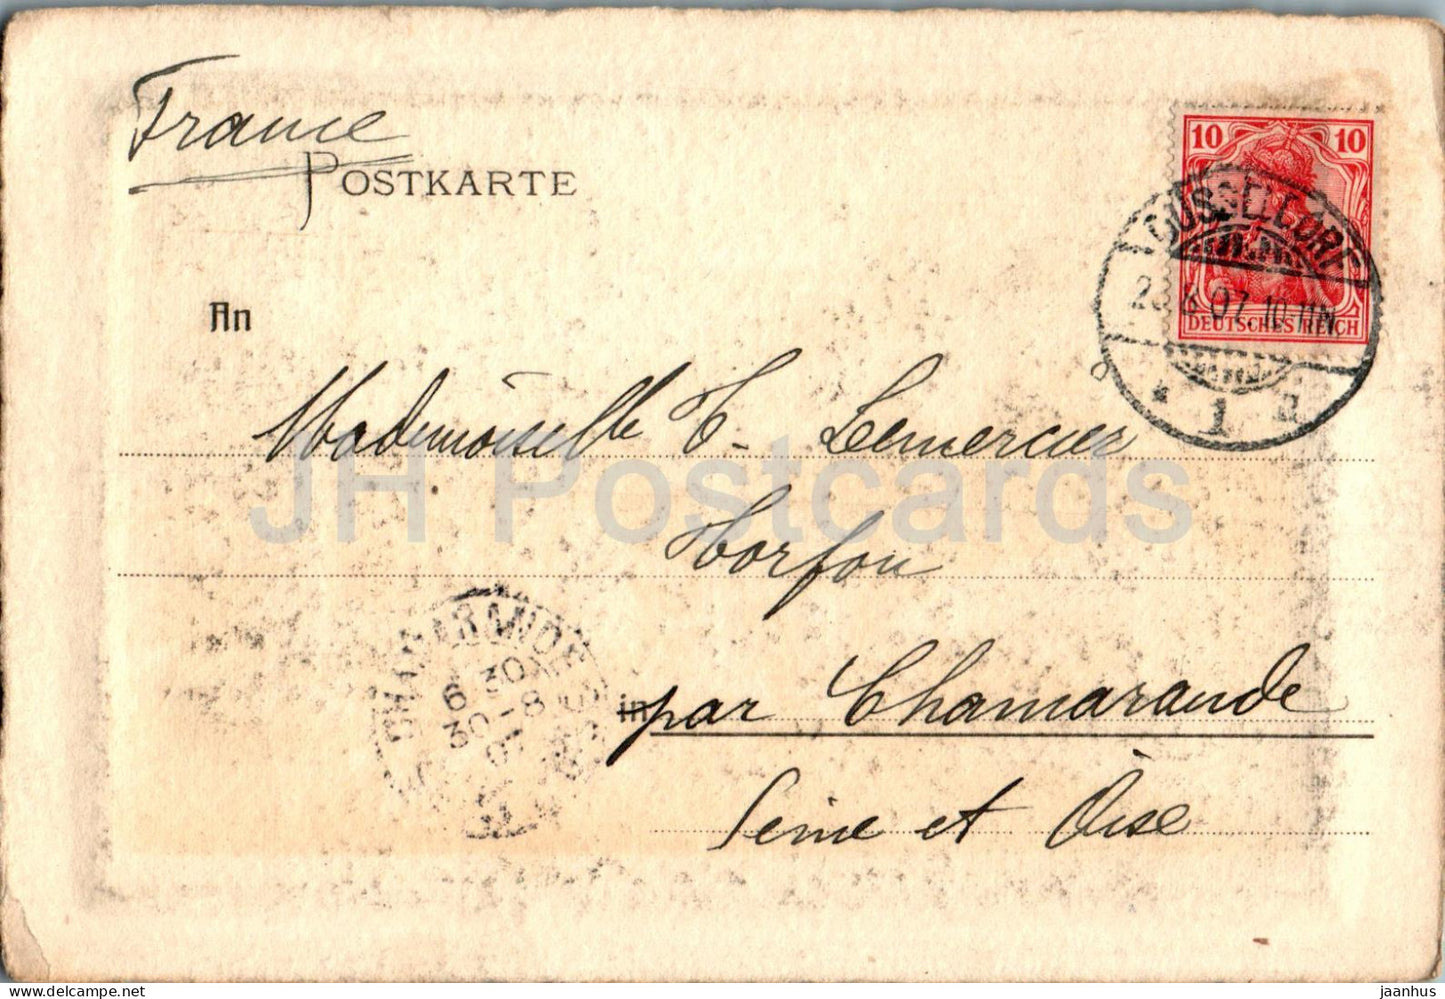 Düsseldorf - Köln - Ehrenhof des Kunstpalastes - Ehrenhof - alte Postkarte - 1907 - Deutschland - gebraucht 